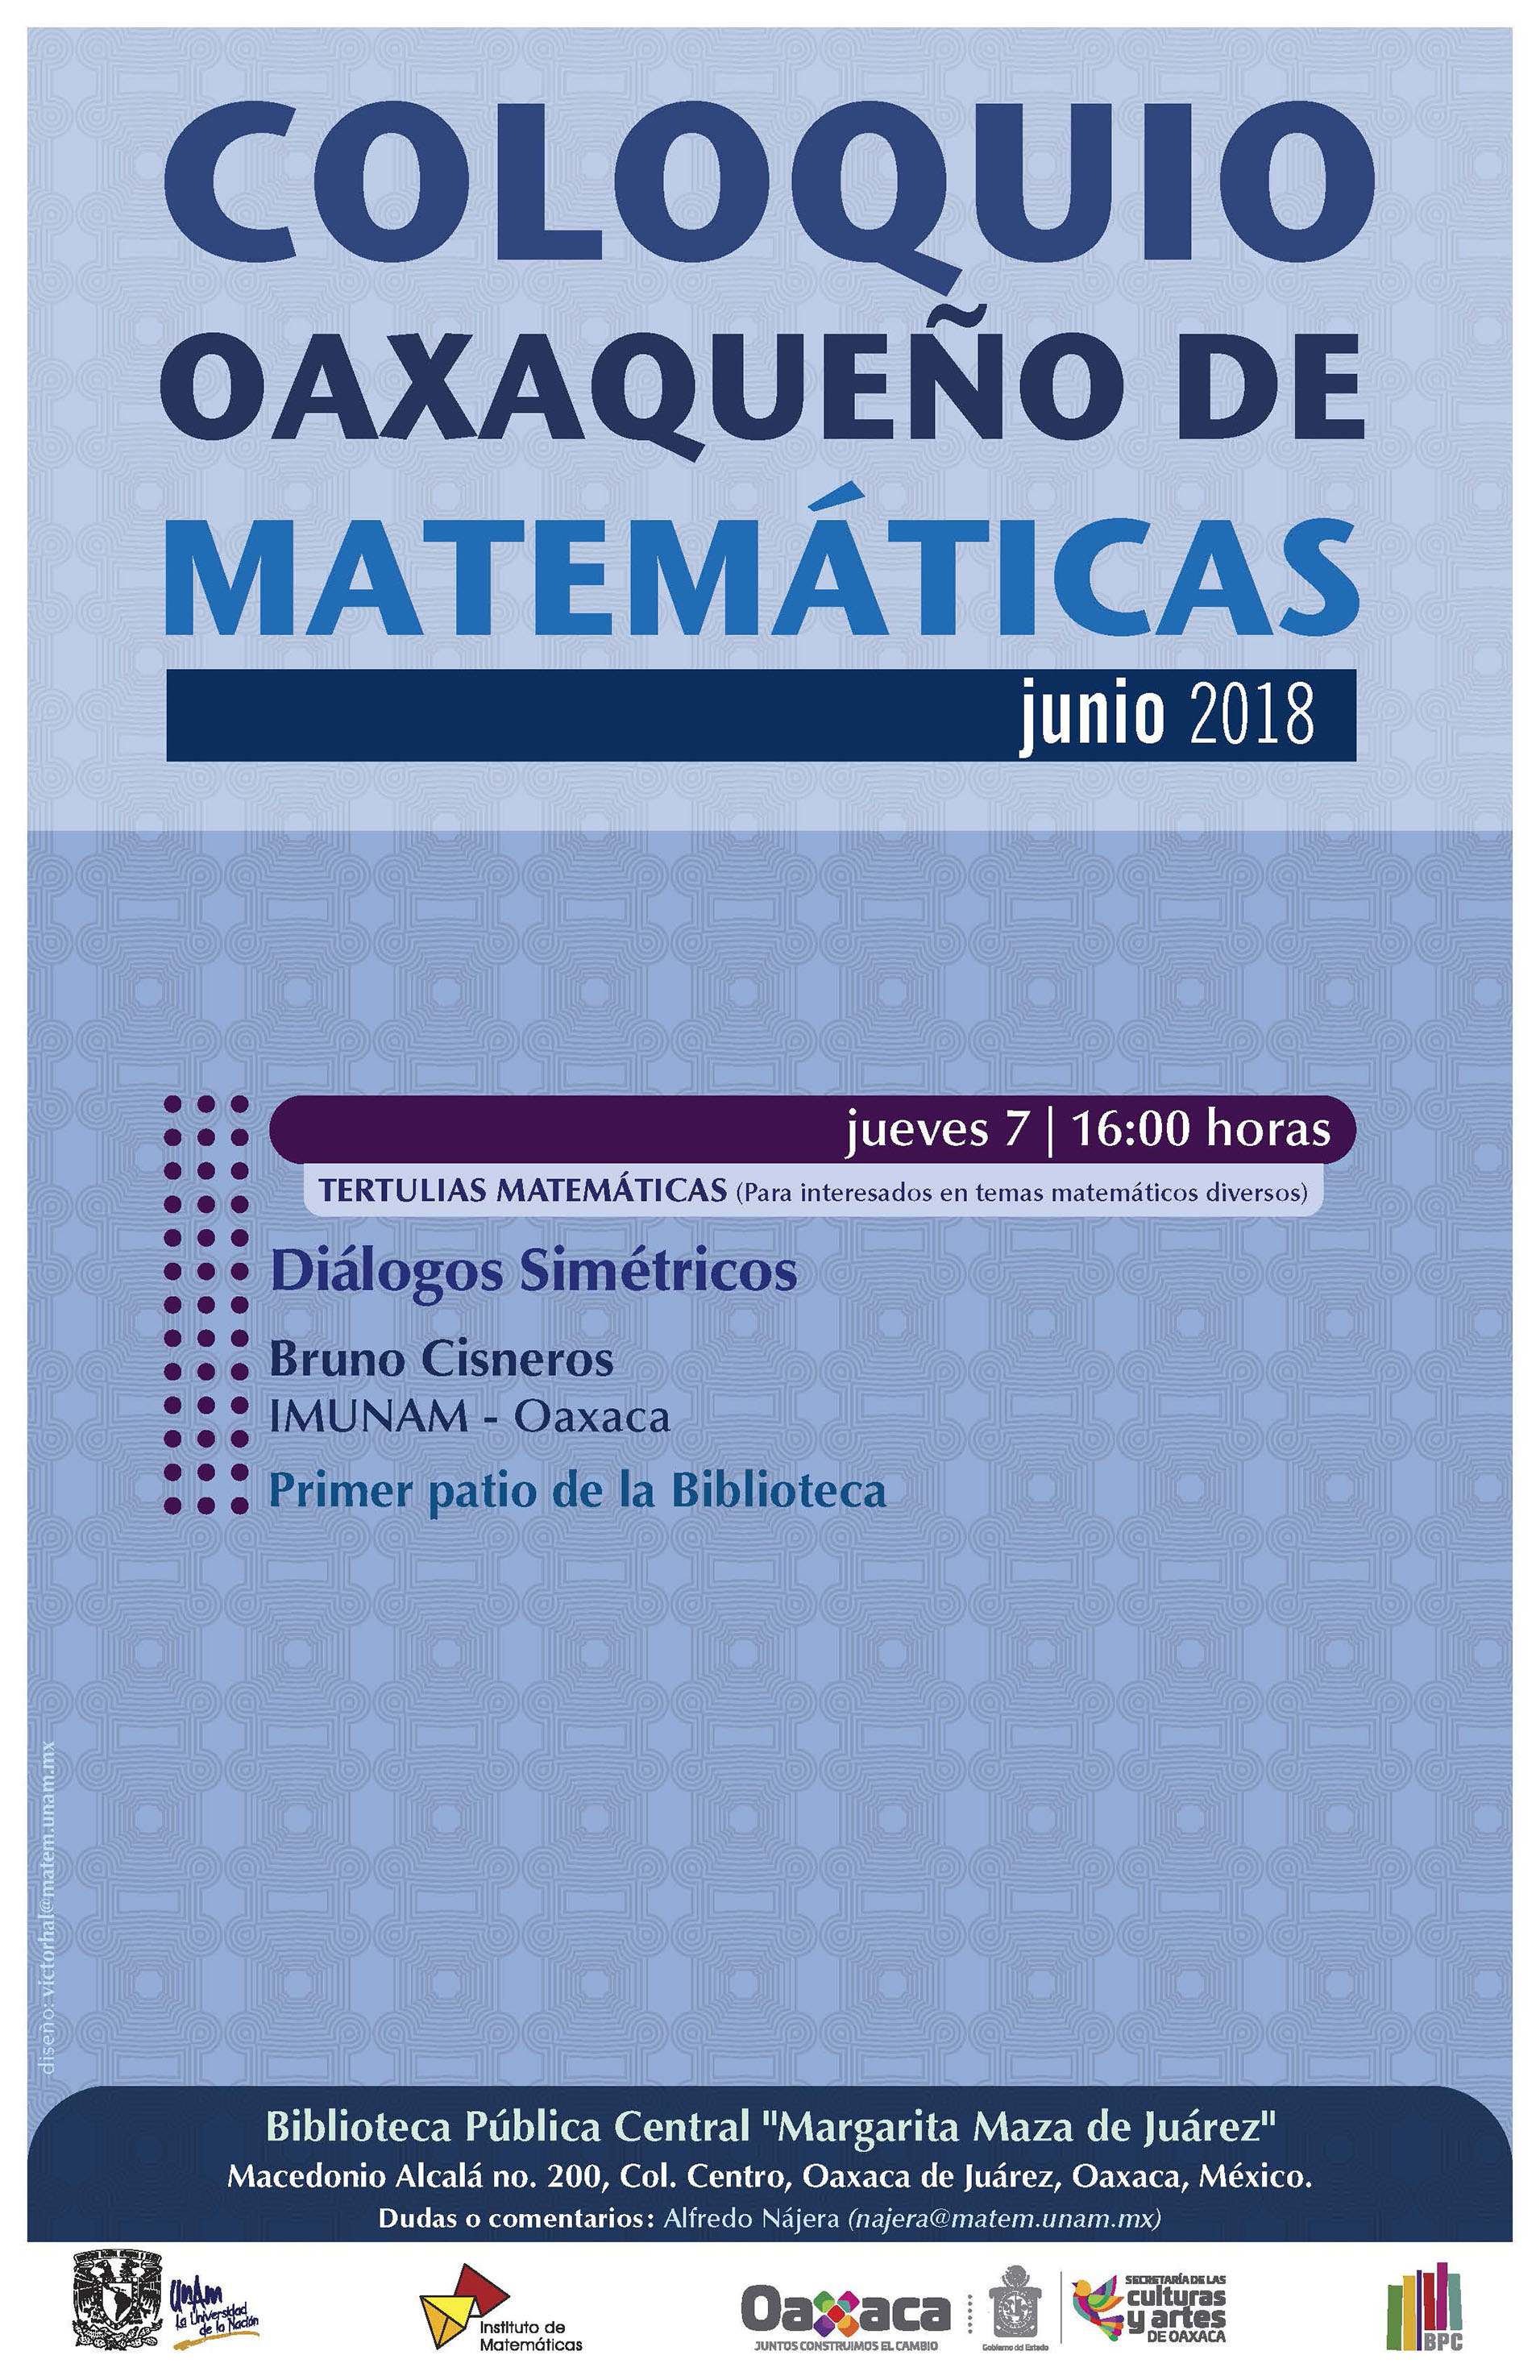 Coloquio Oaxaqueño de Matemáticas: Tertulias Matemáticas